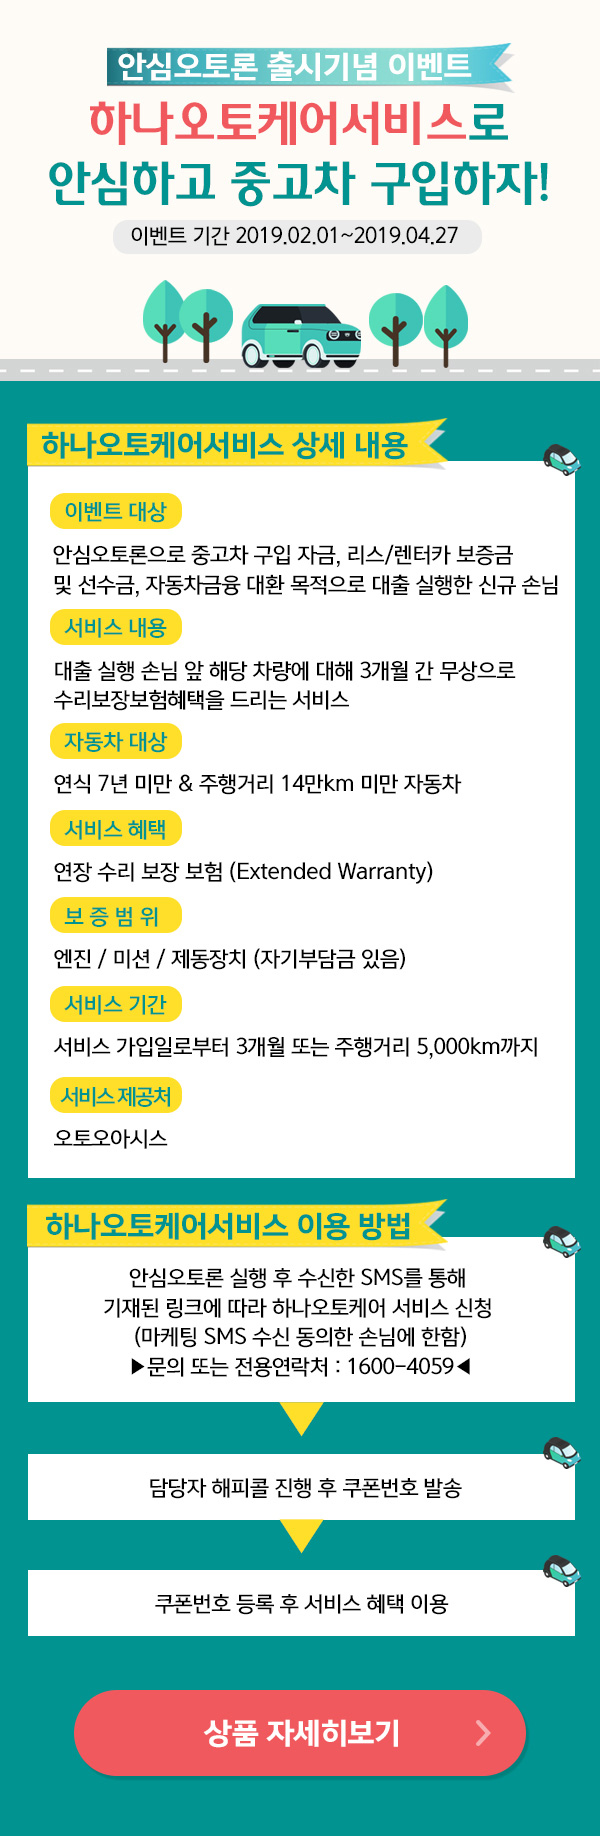 안심오토론 출시기념 이벤트 이벤트기간 2019.02.01 ~ 2019.04.22